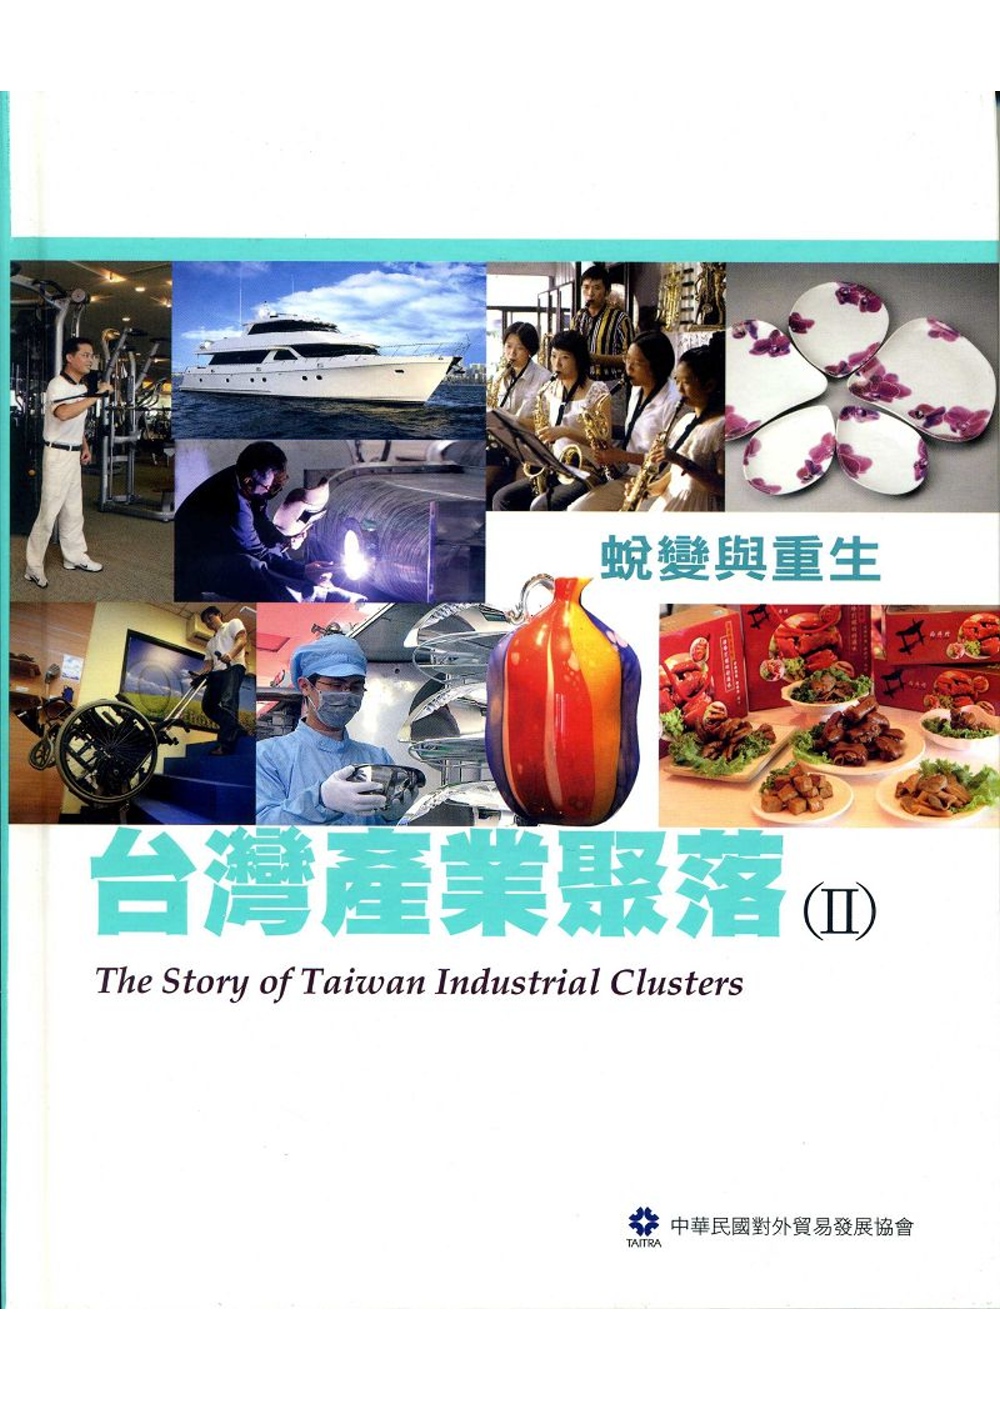 台灣產業聚落(II)